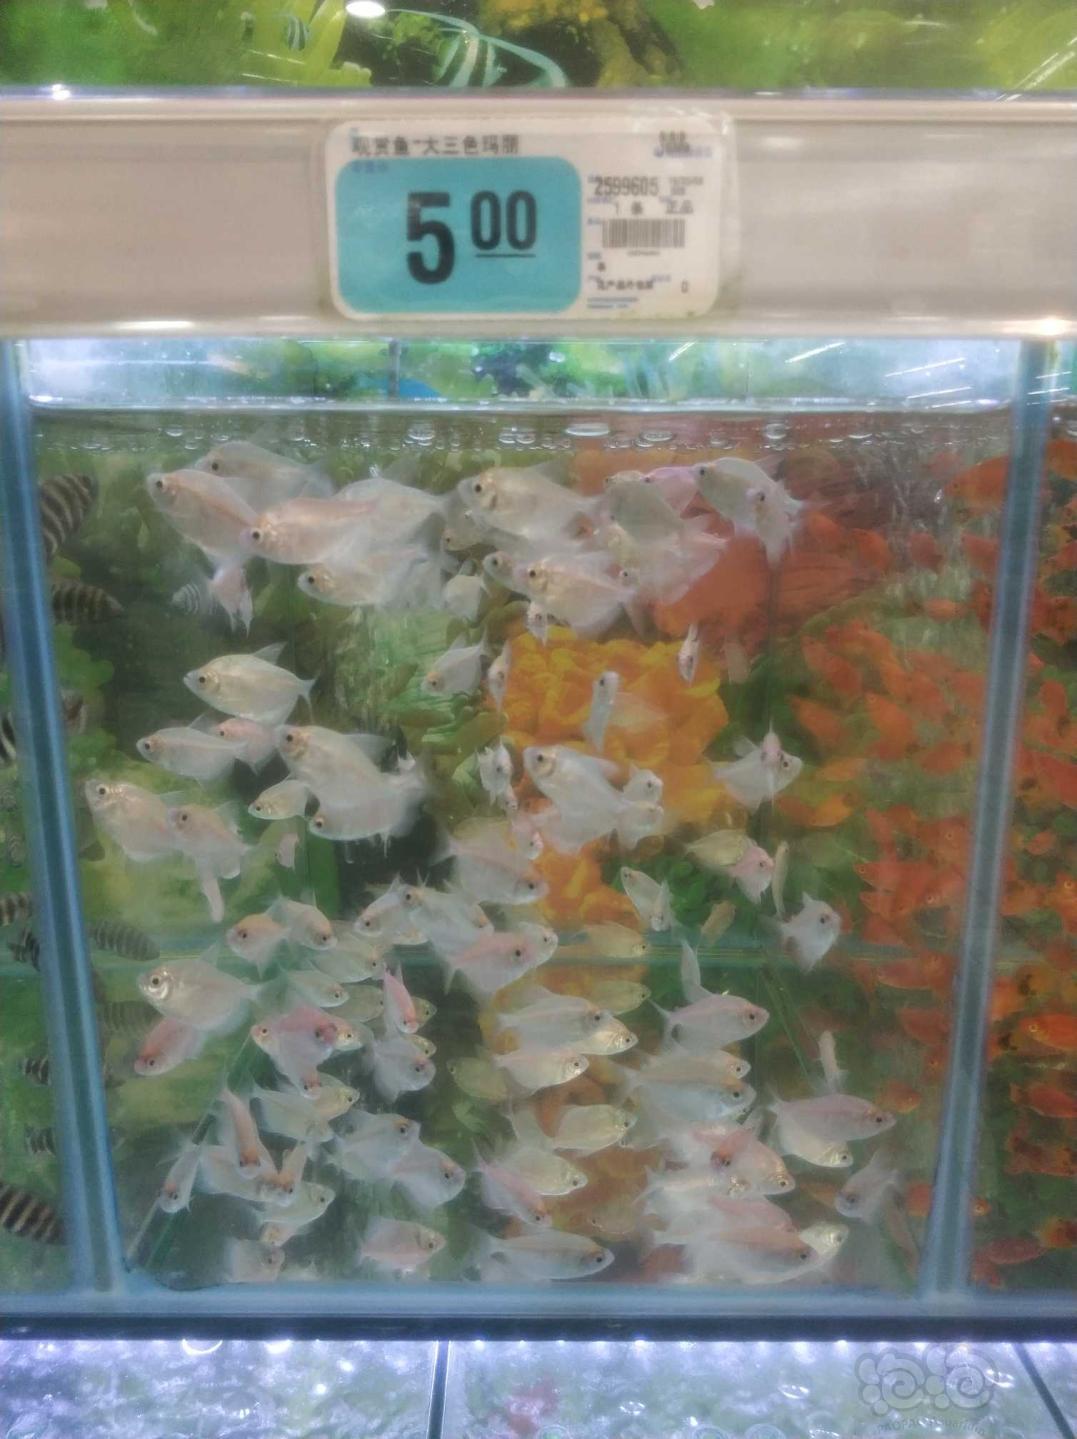 【其它】今天在超市看到这些鱼值得购买吗？-图1